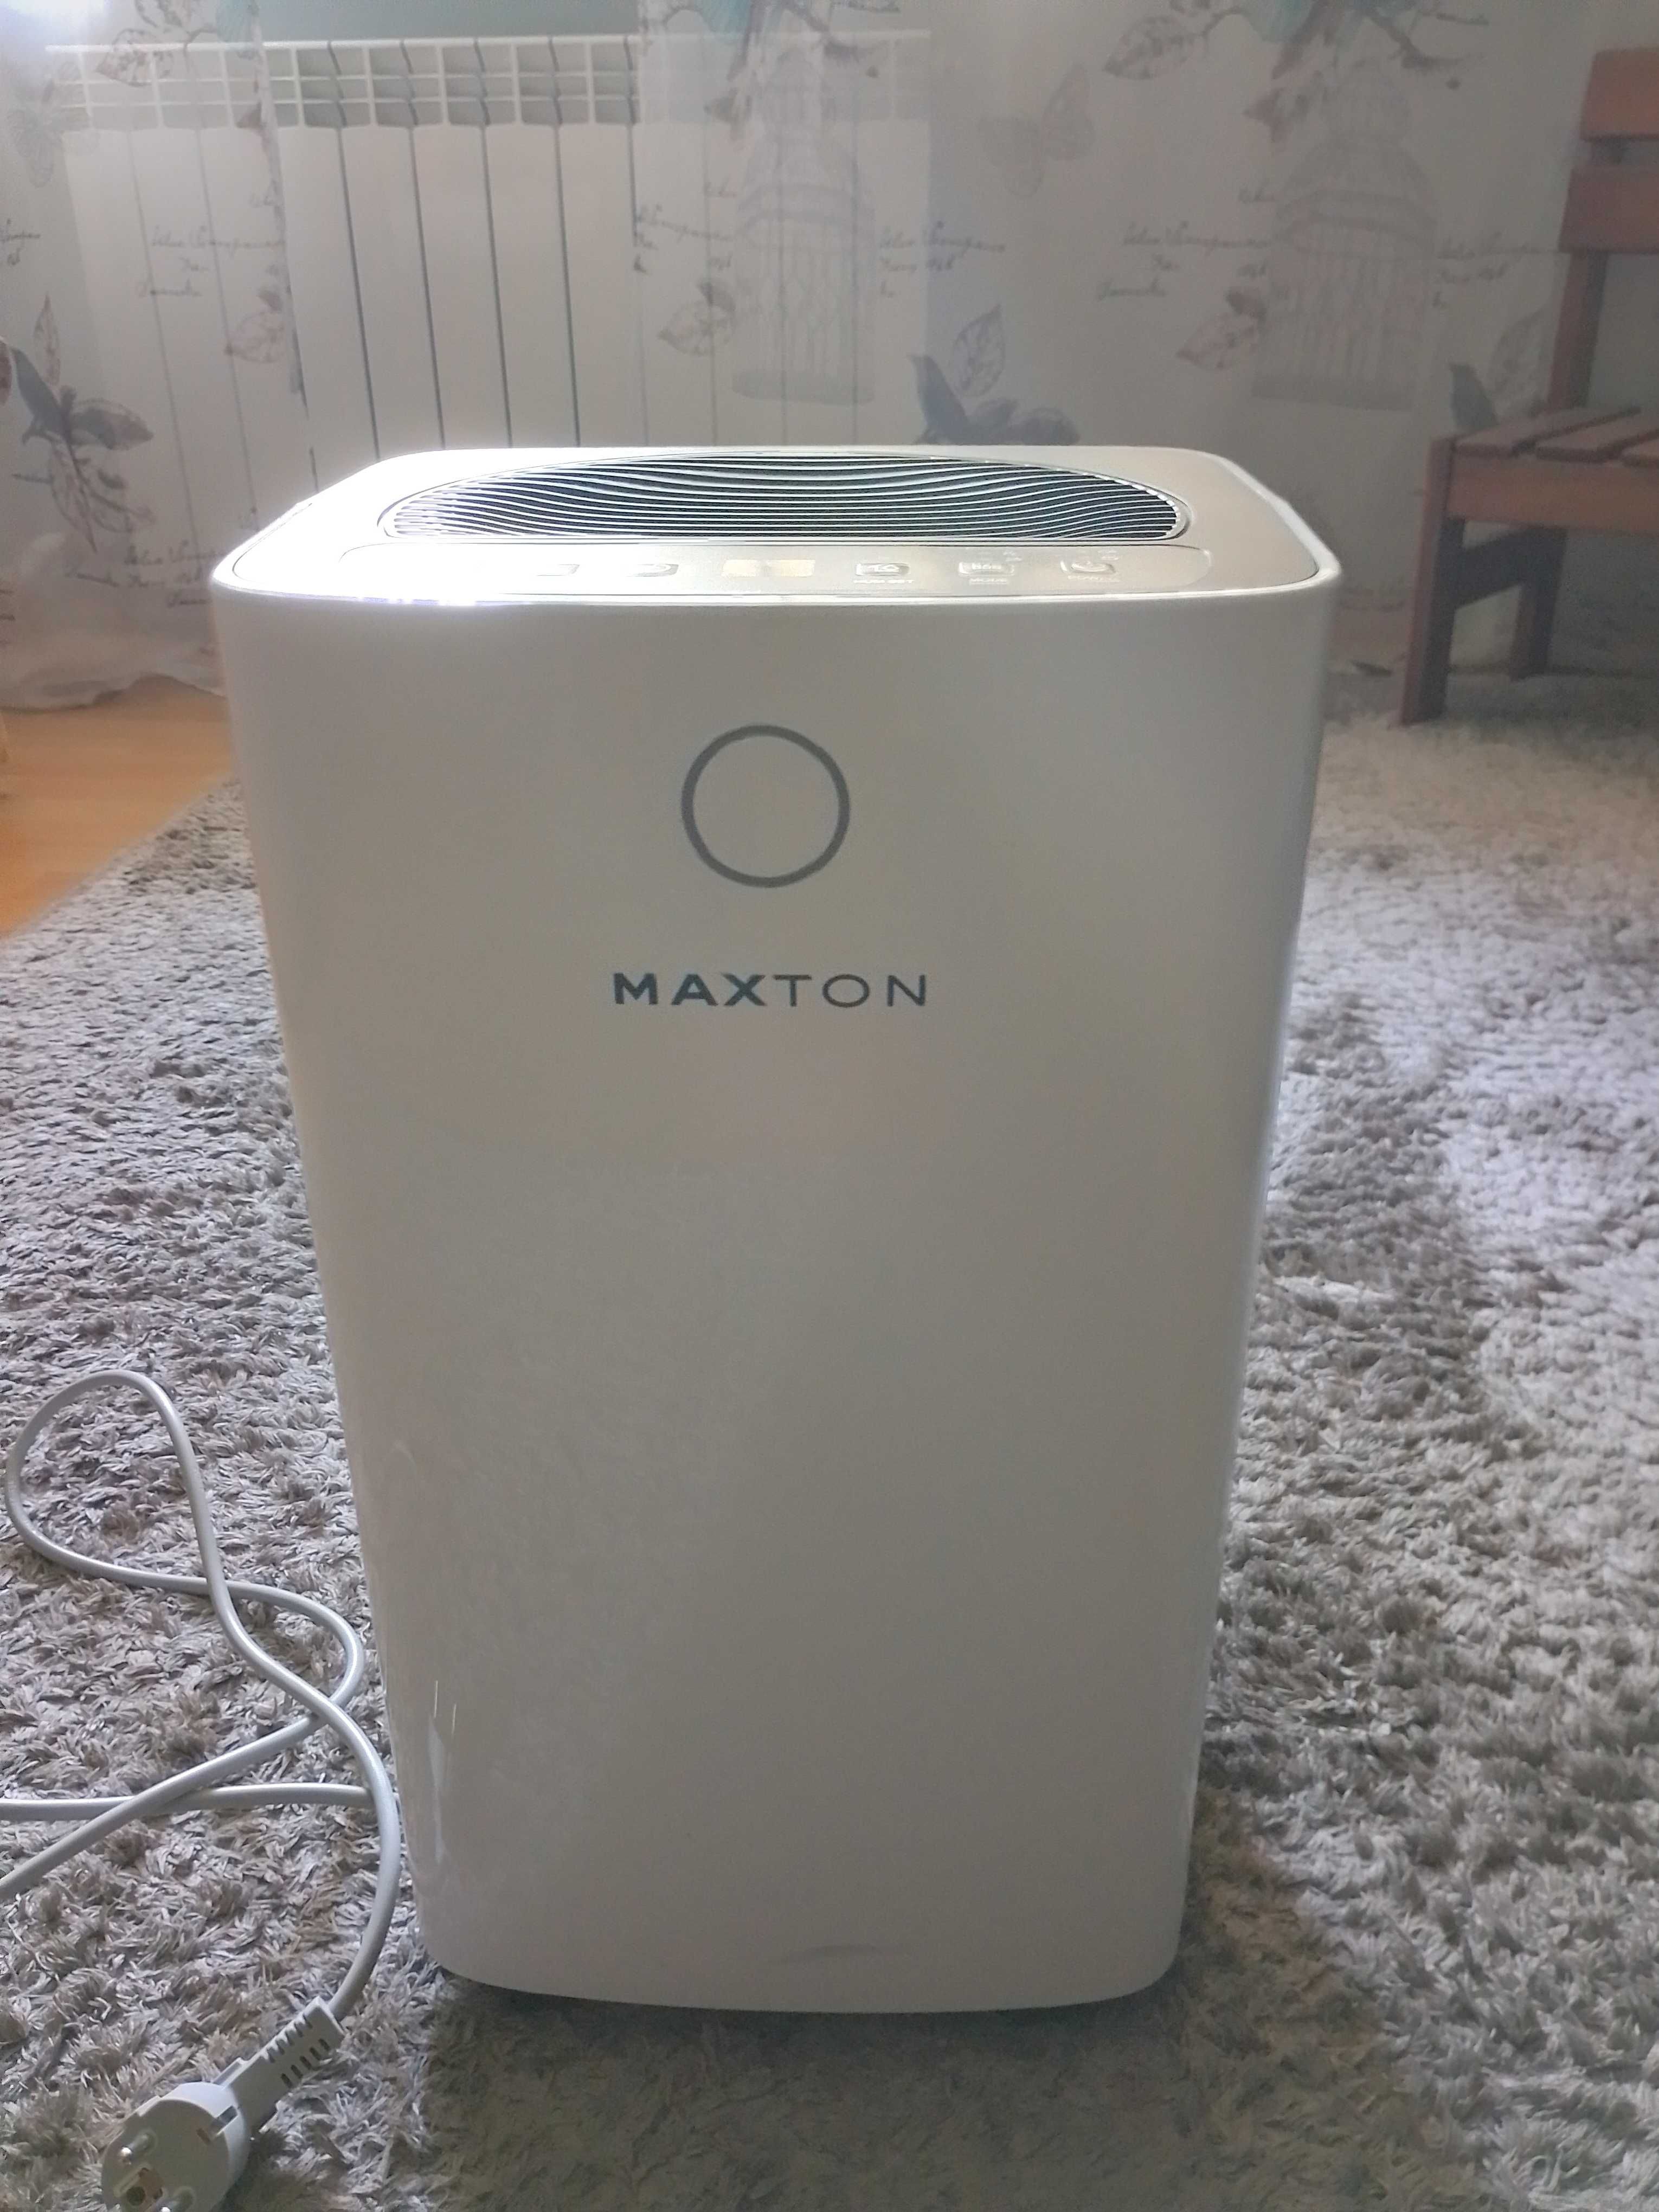 Осушувач повітря Maxton 12a